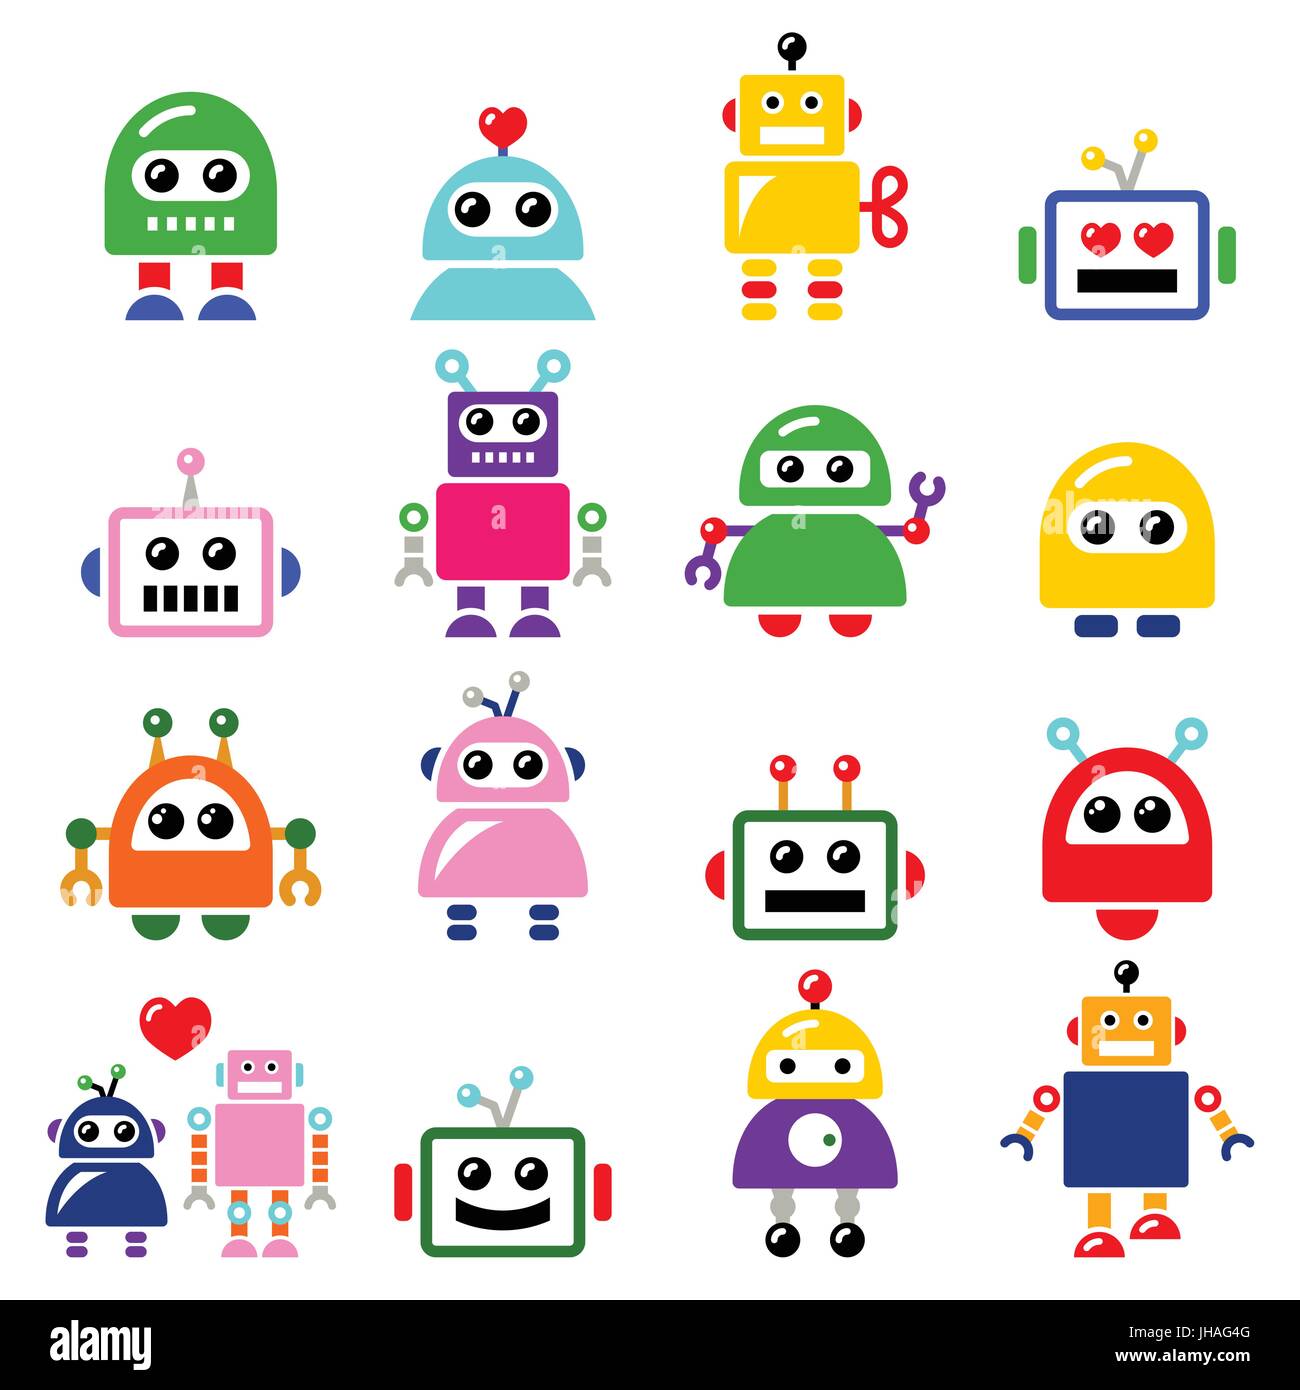 Homme et femme robot, l'Intelligence Artificielle (IA) icons set Vector icons set de robot, la technologie moderne isolated on white Illustration de Vecteur